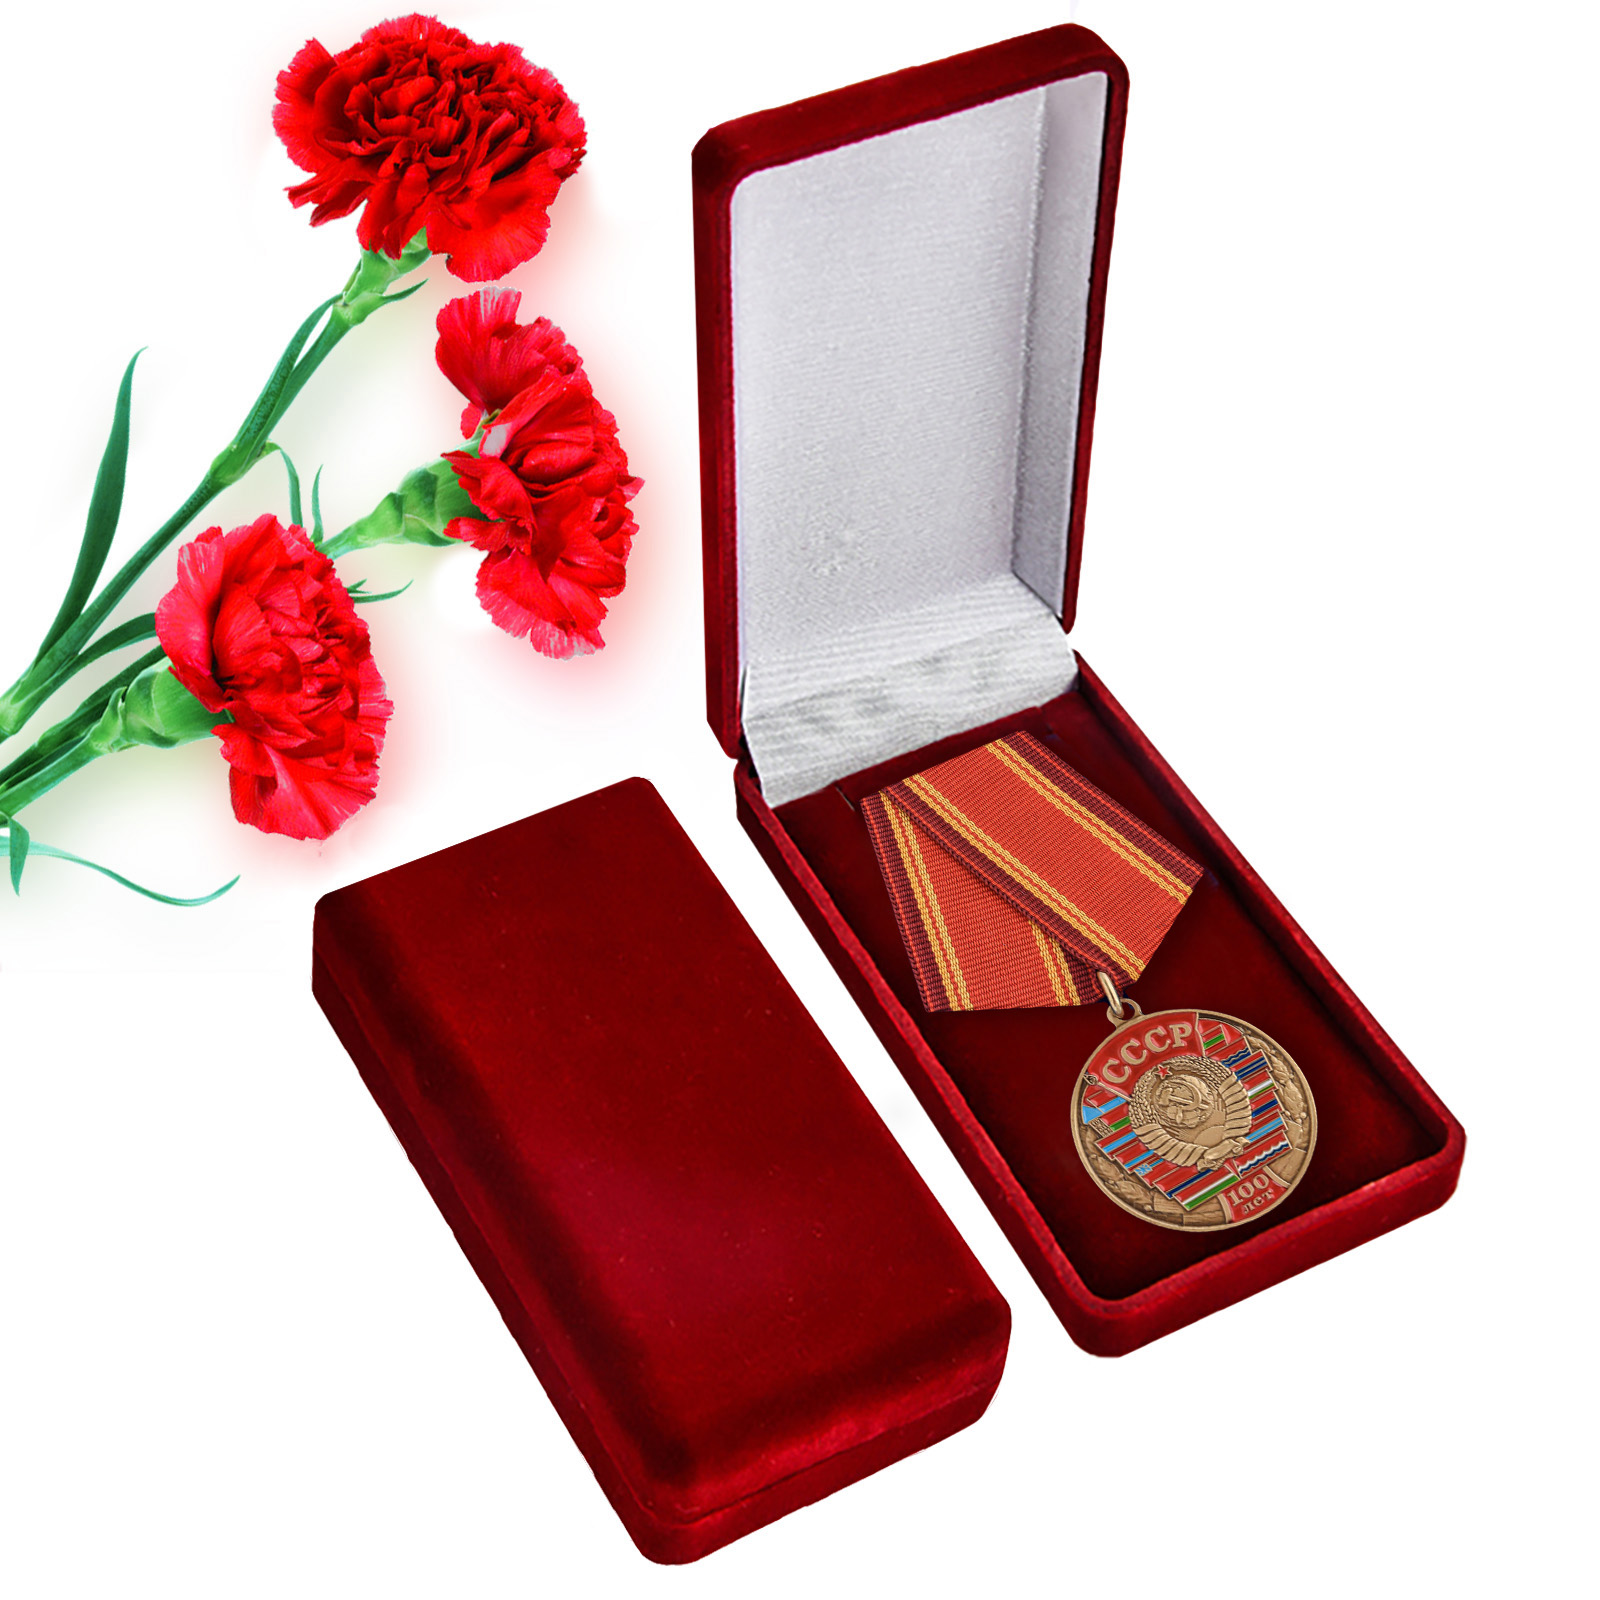 Купить медаль 100 лет Союзу Советских Социалистических республик с доставкой